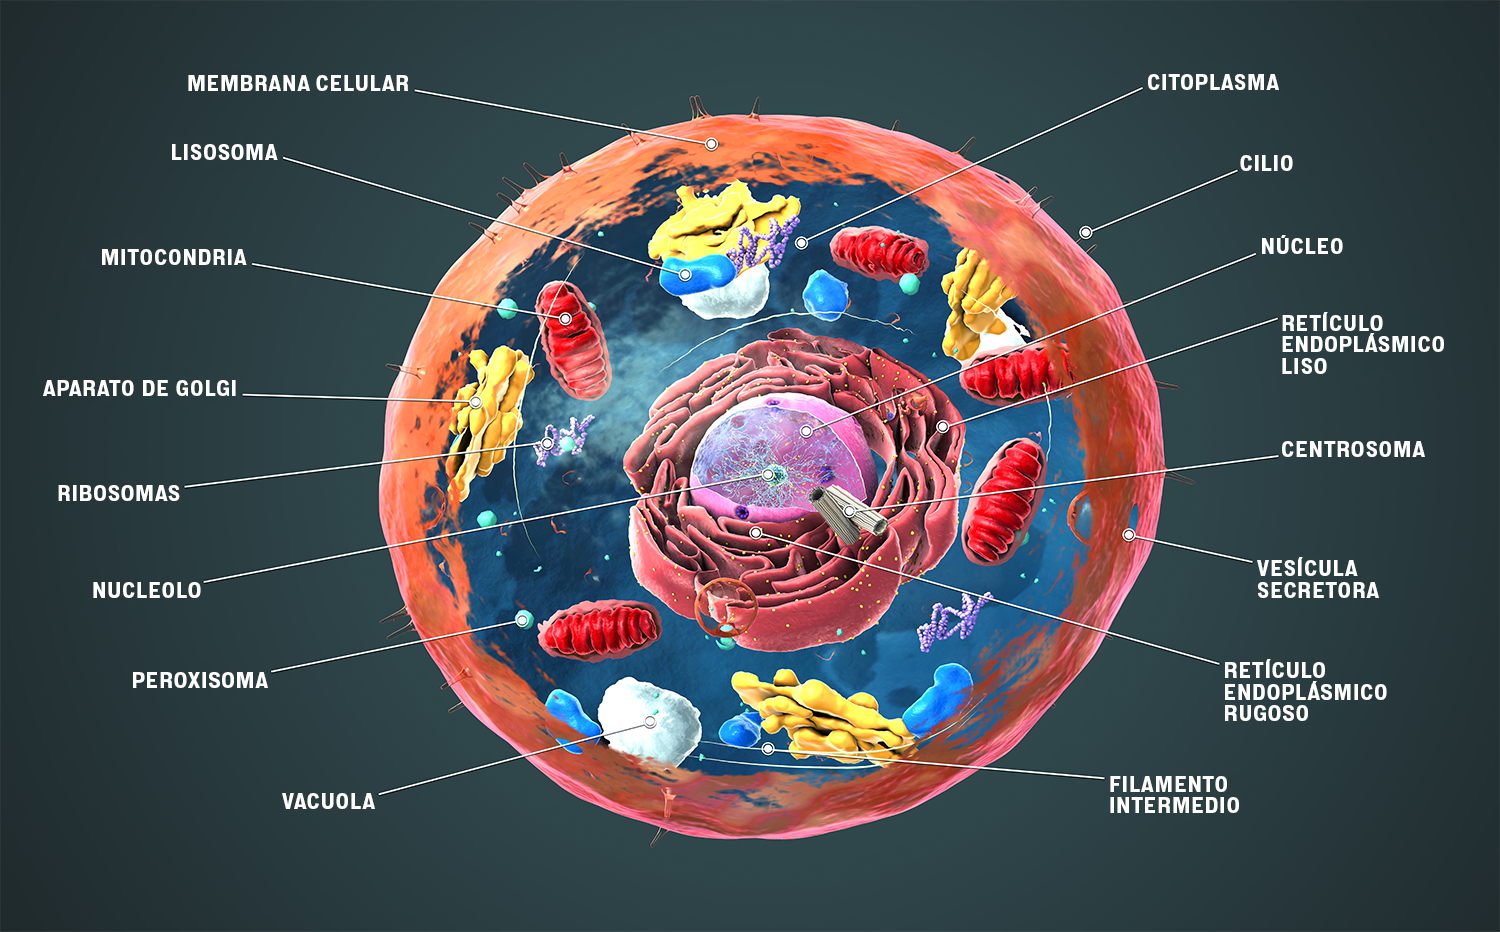 El diagrama a color muestra el interior de una célula. Con flechas se indican estructuras como la membrana celular, el retículo endoplasmático, la mitocondria, entre otras.